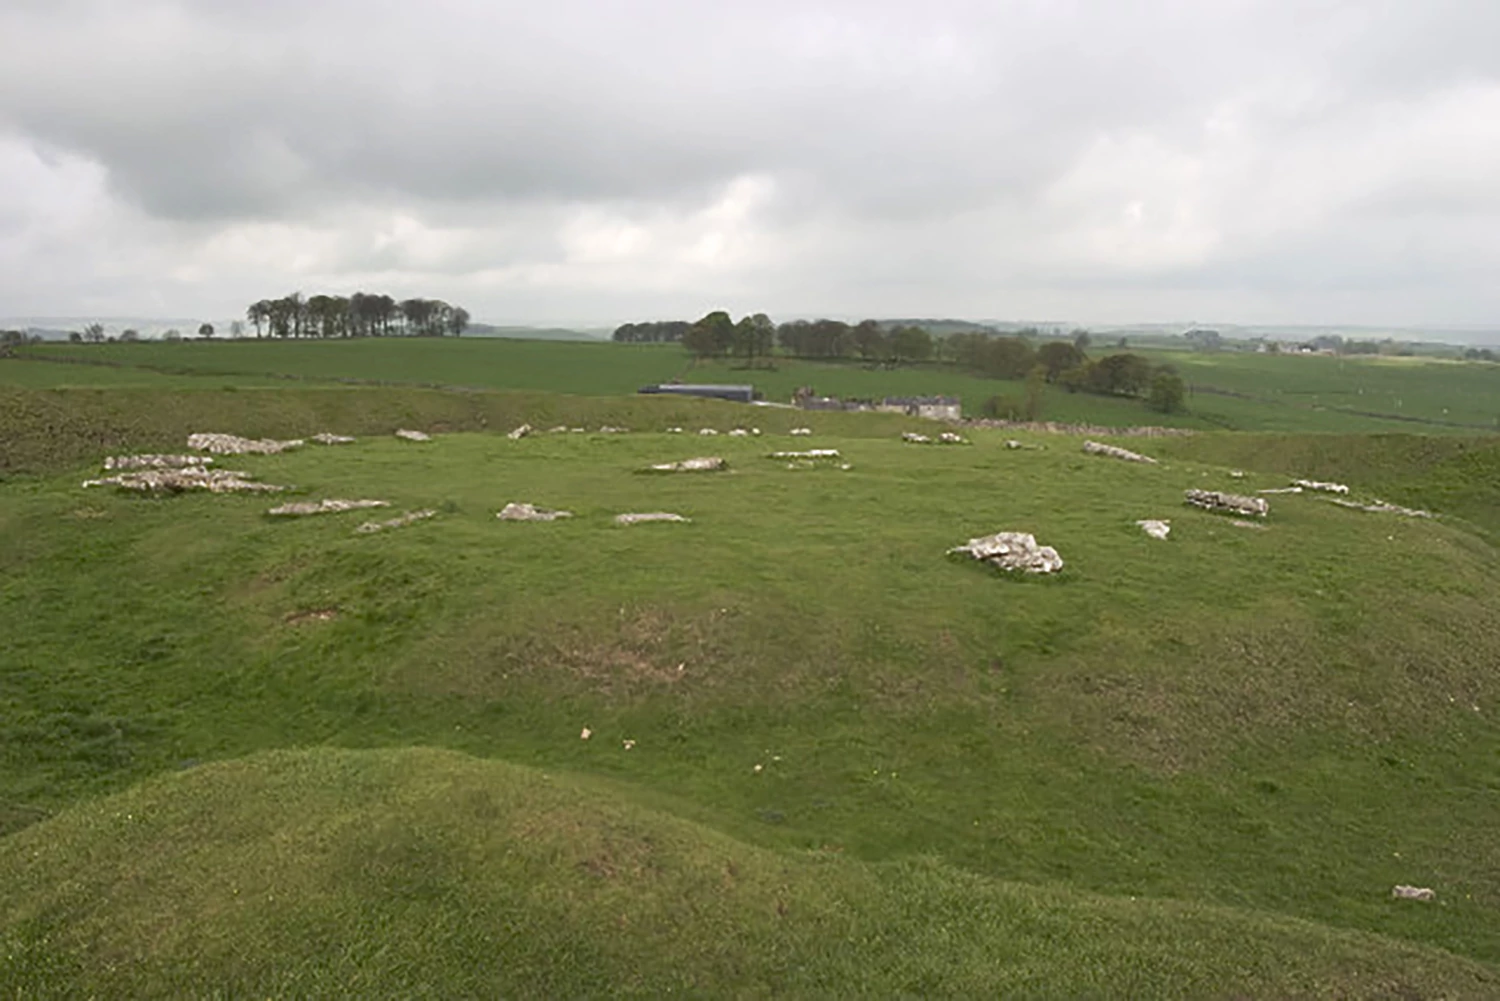 Arbor Low Stones, Neolithic